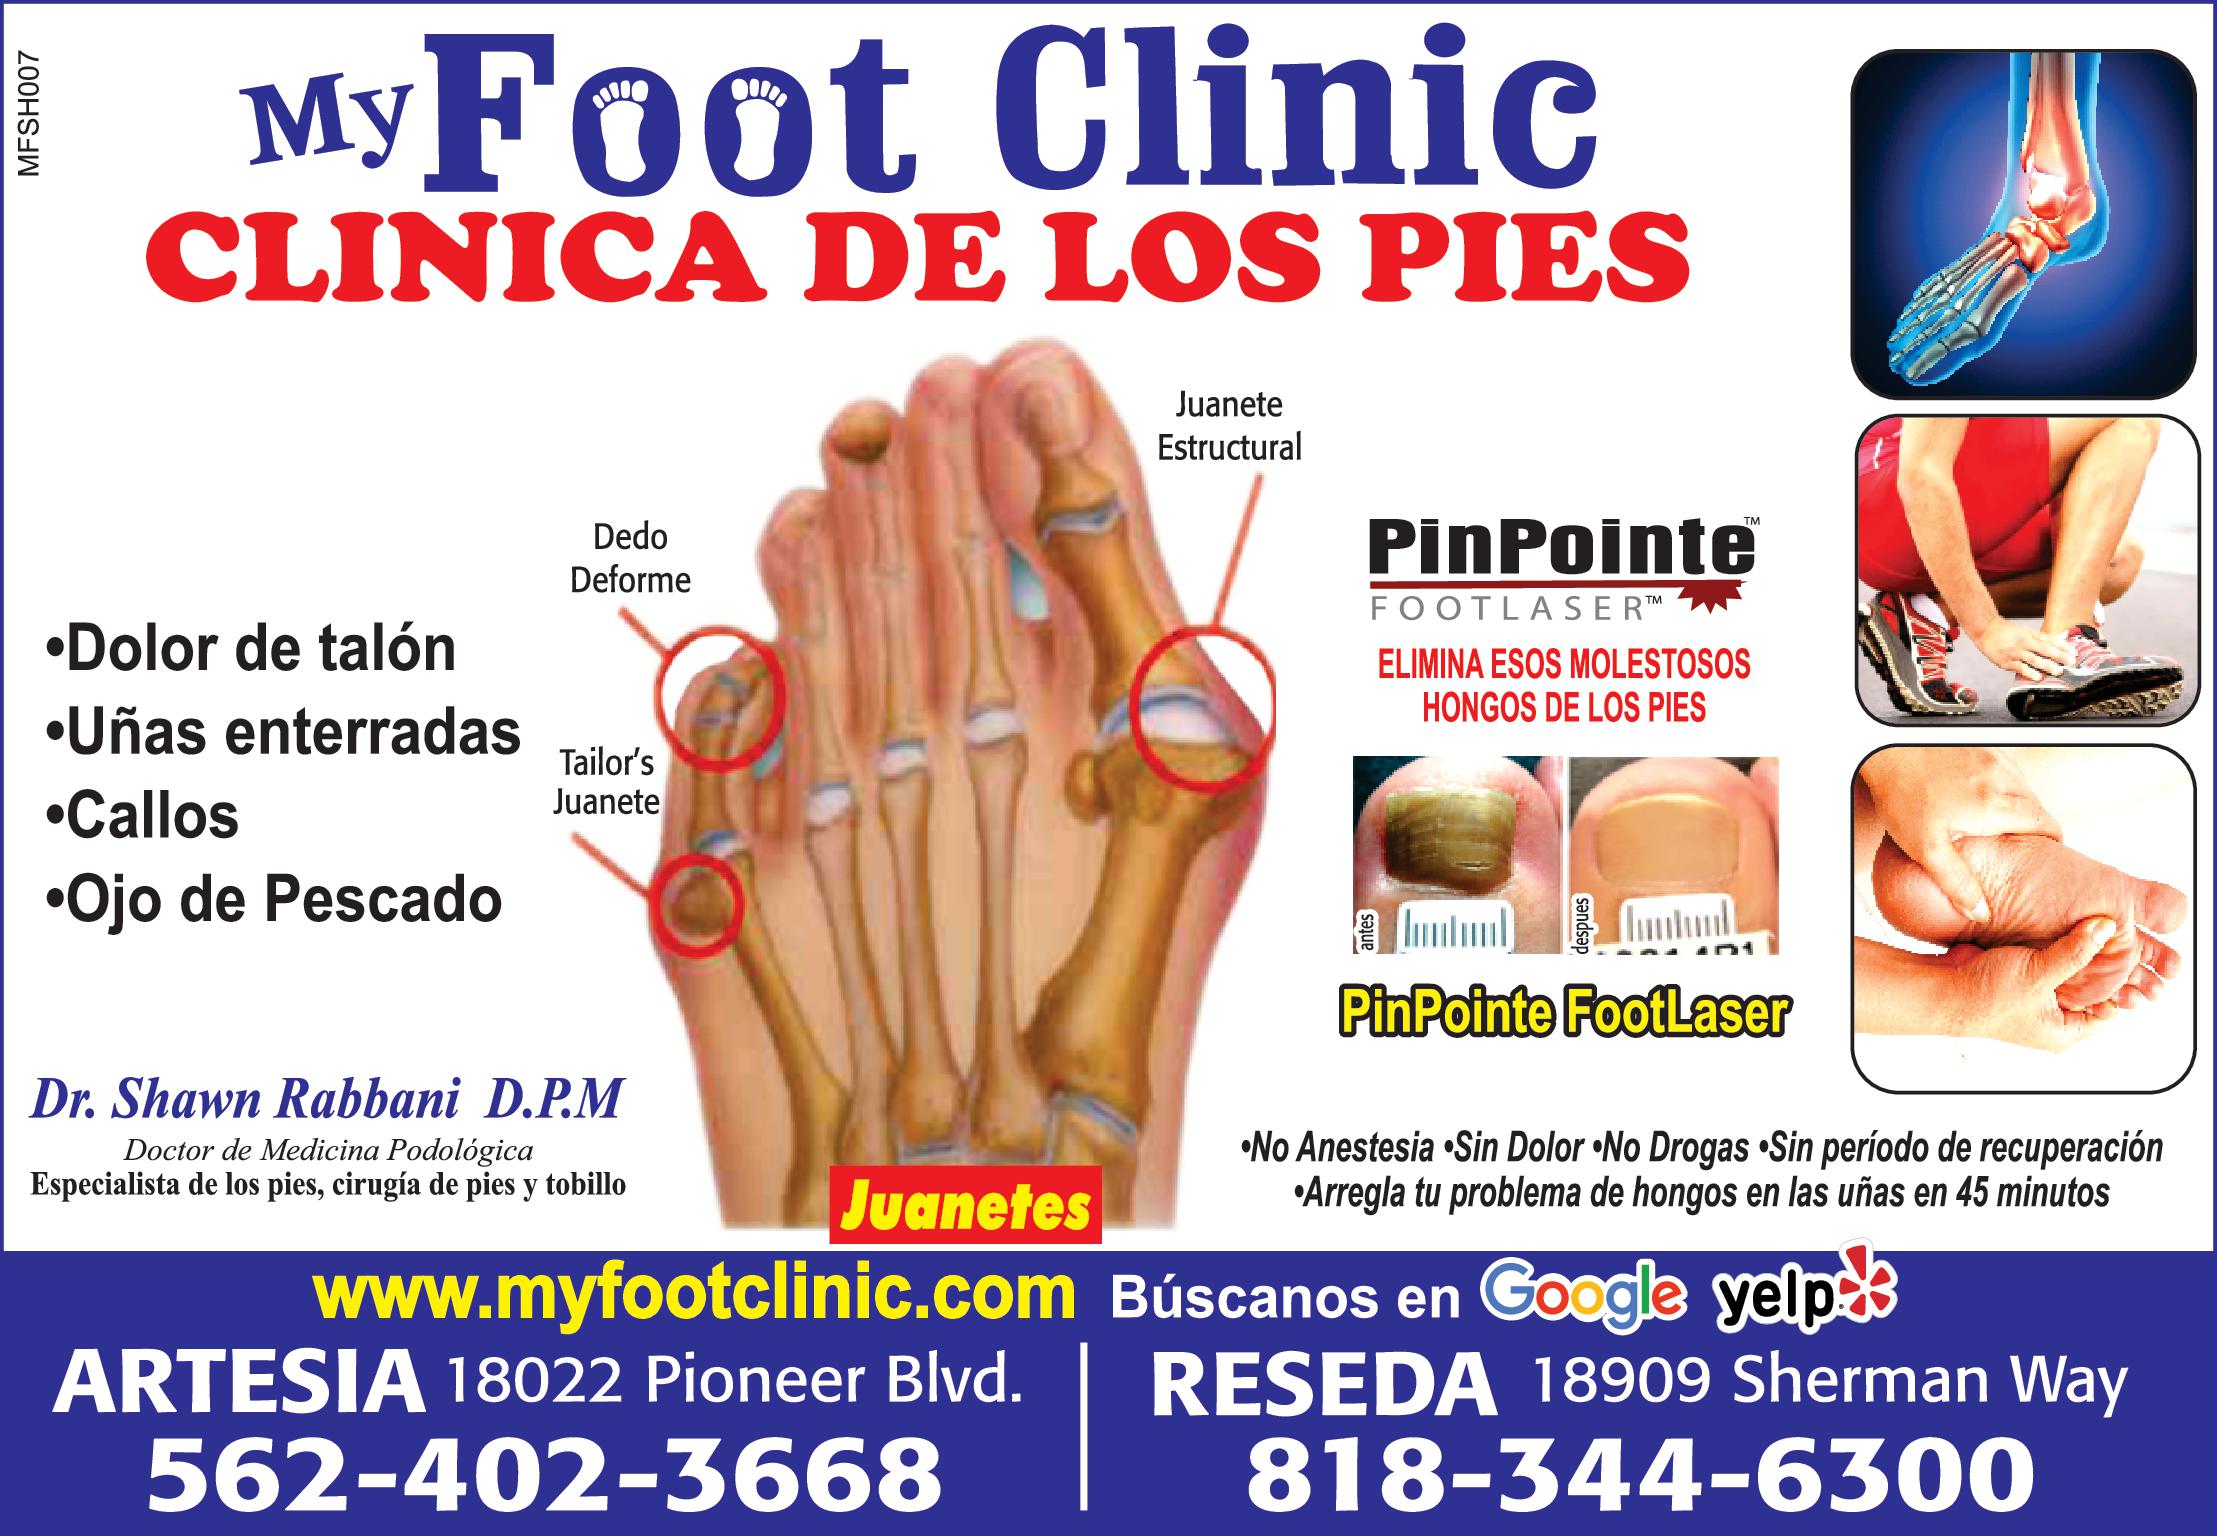 MFSH007 My Foot Clinic CLINICA DE LOS PIES Dolor de talón Dedo Deforme Uñas enterradas Callos Ojo de Pescado Tailor